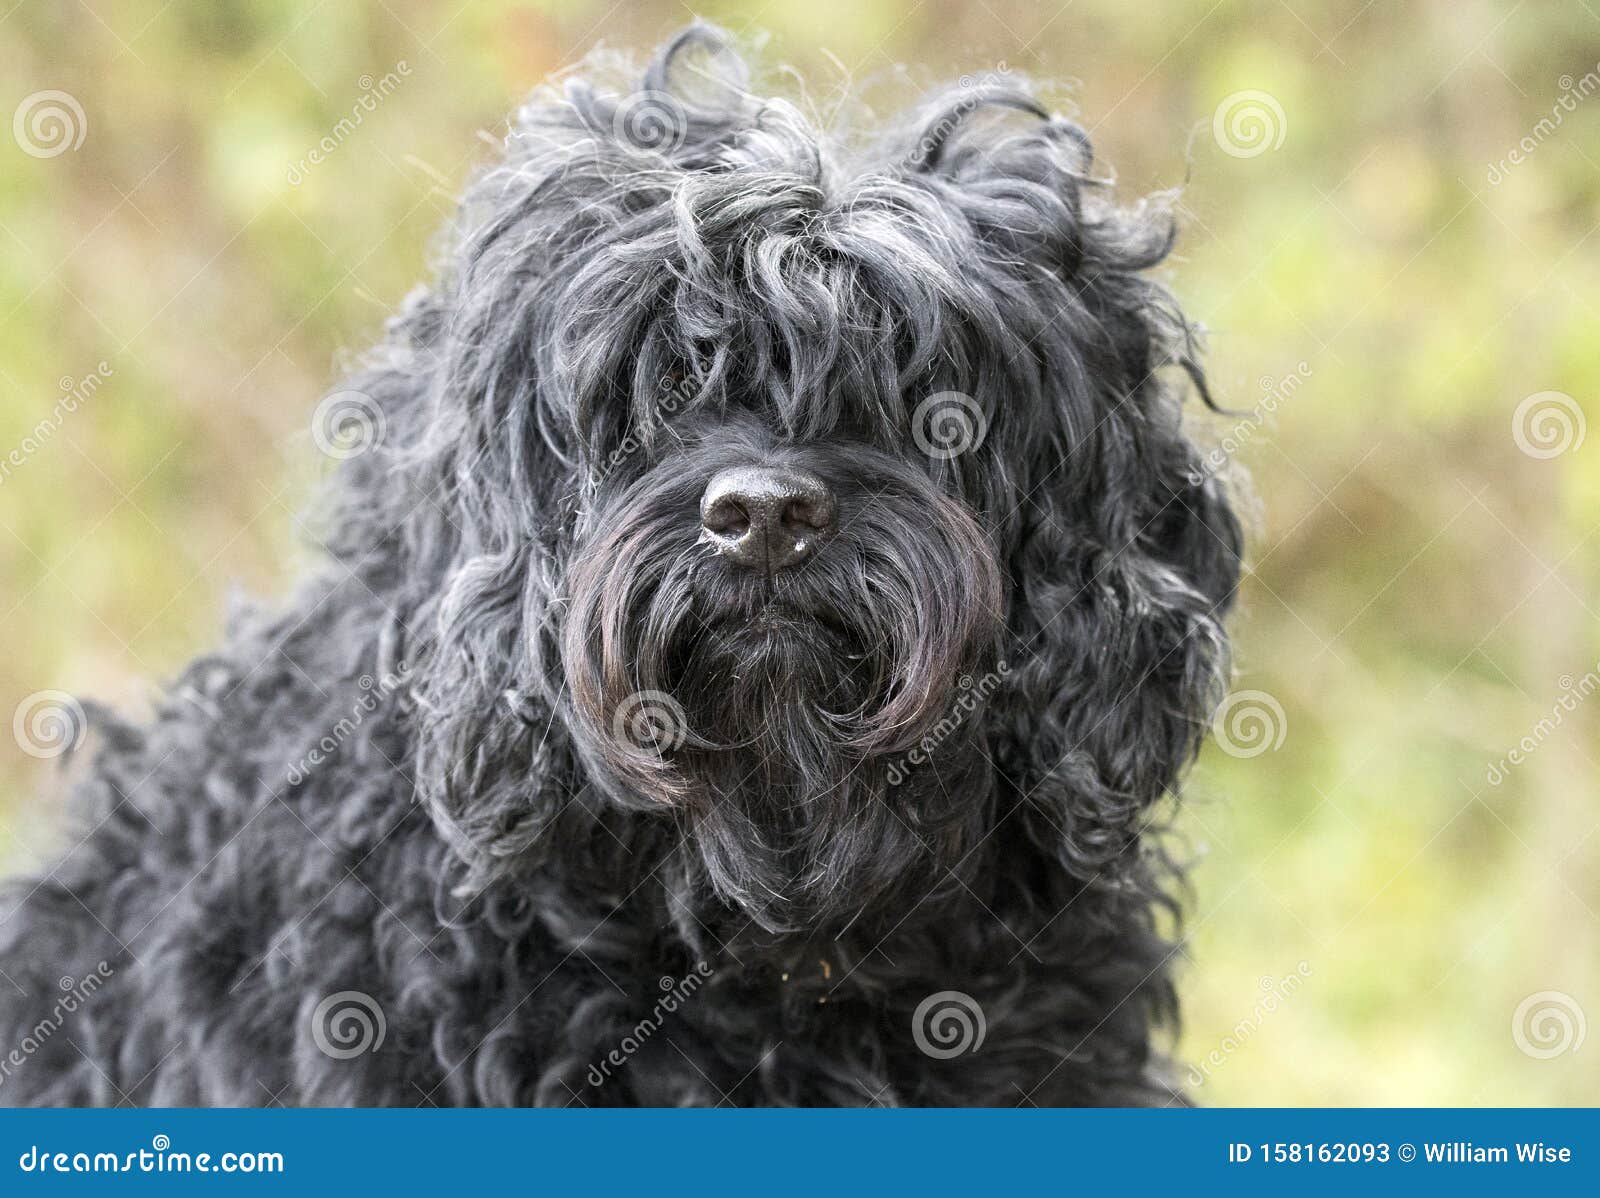 Shaggy Black Long Haired Cockapoo Dog Adoption Photo Stock Image Image Of Rescue Websites 158162093